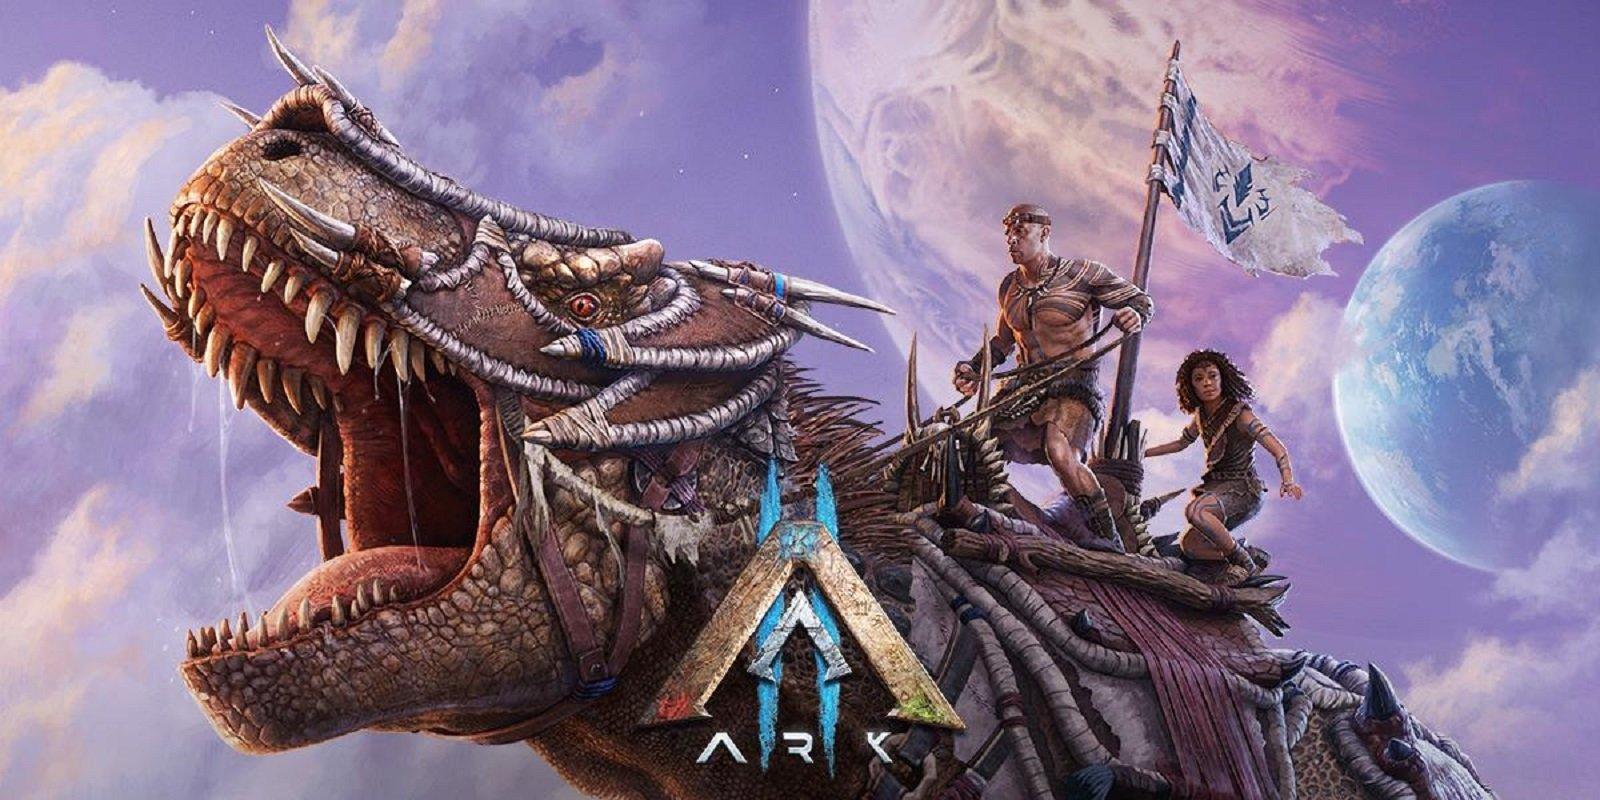 Ark II Announced Featuring Vin Diesel - Game Informer